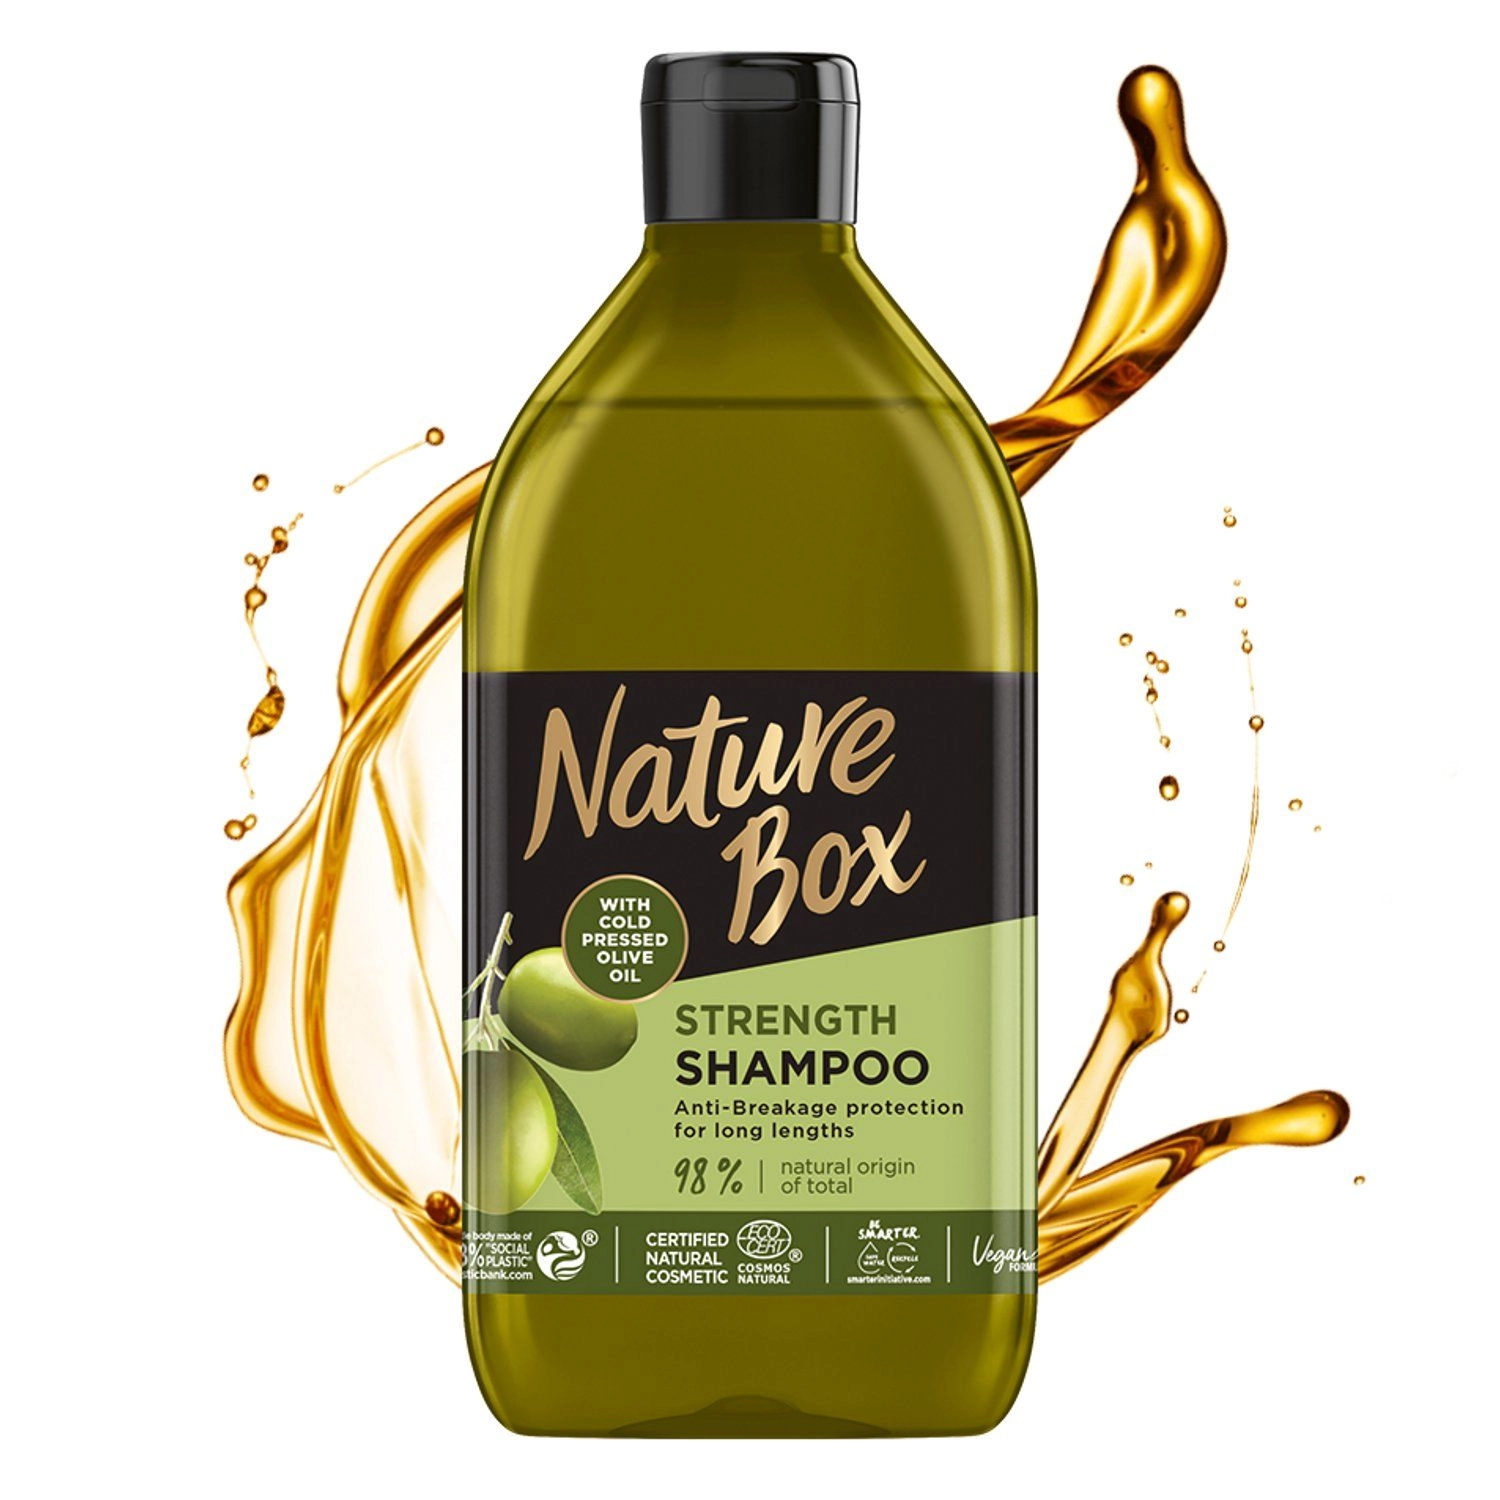 Укрепляющий шампунь для волос с оливковым маслом холодного отжима - Nature Box Strength Shampoo, 385 мл - фото N3